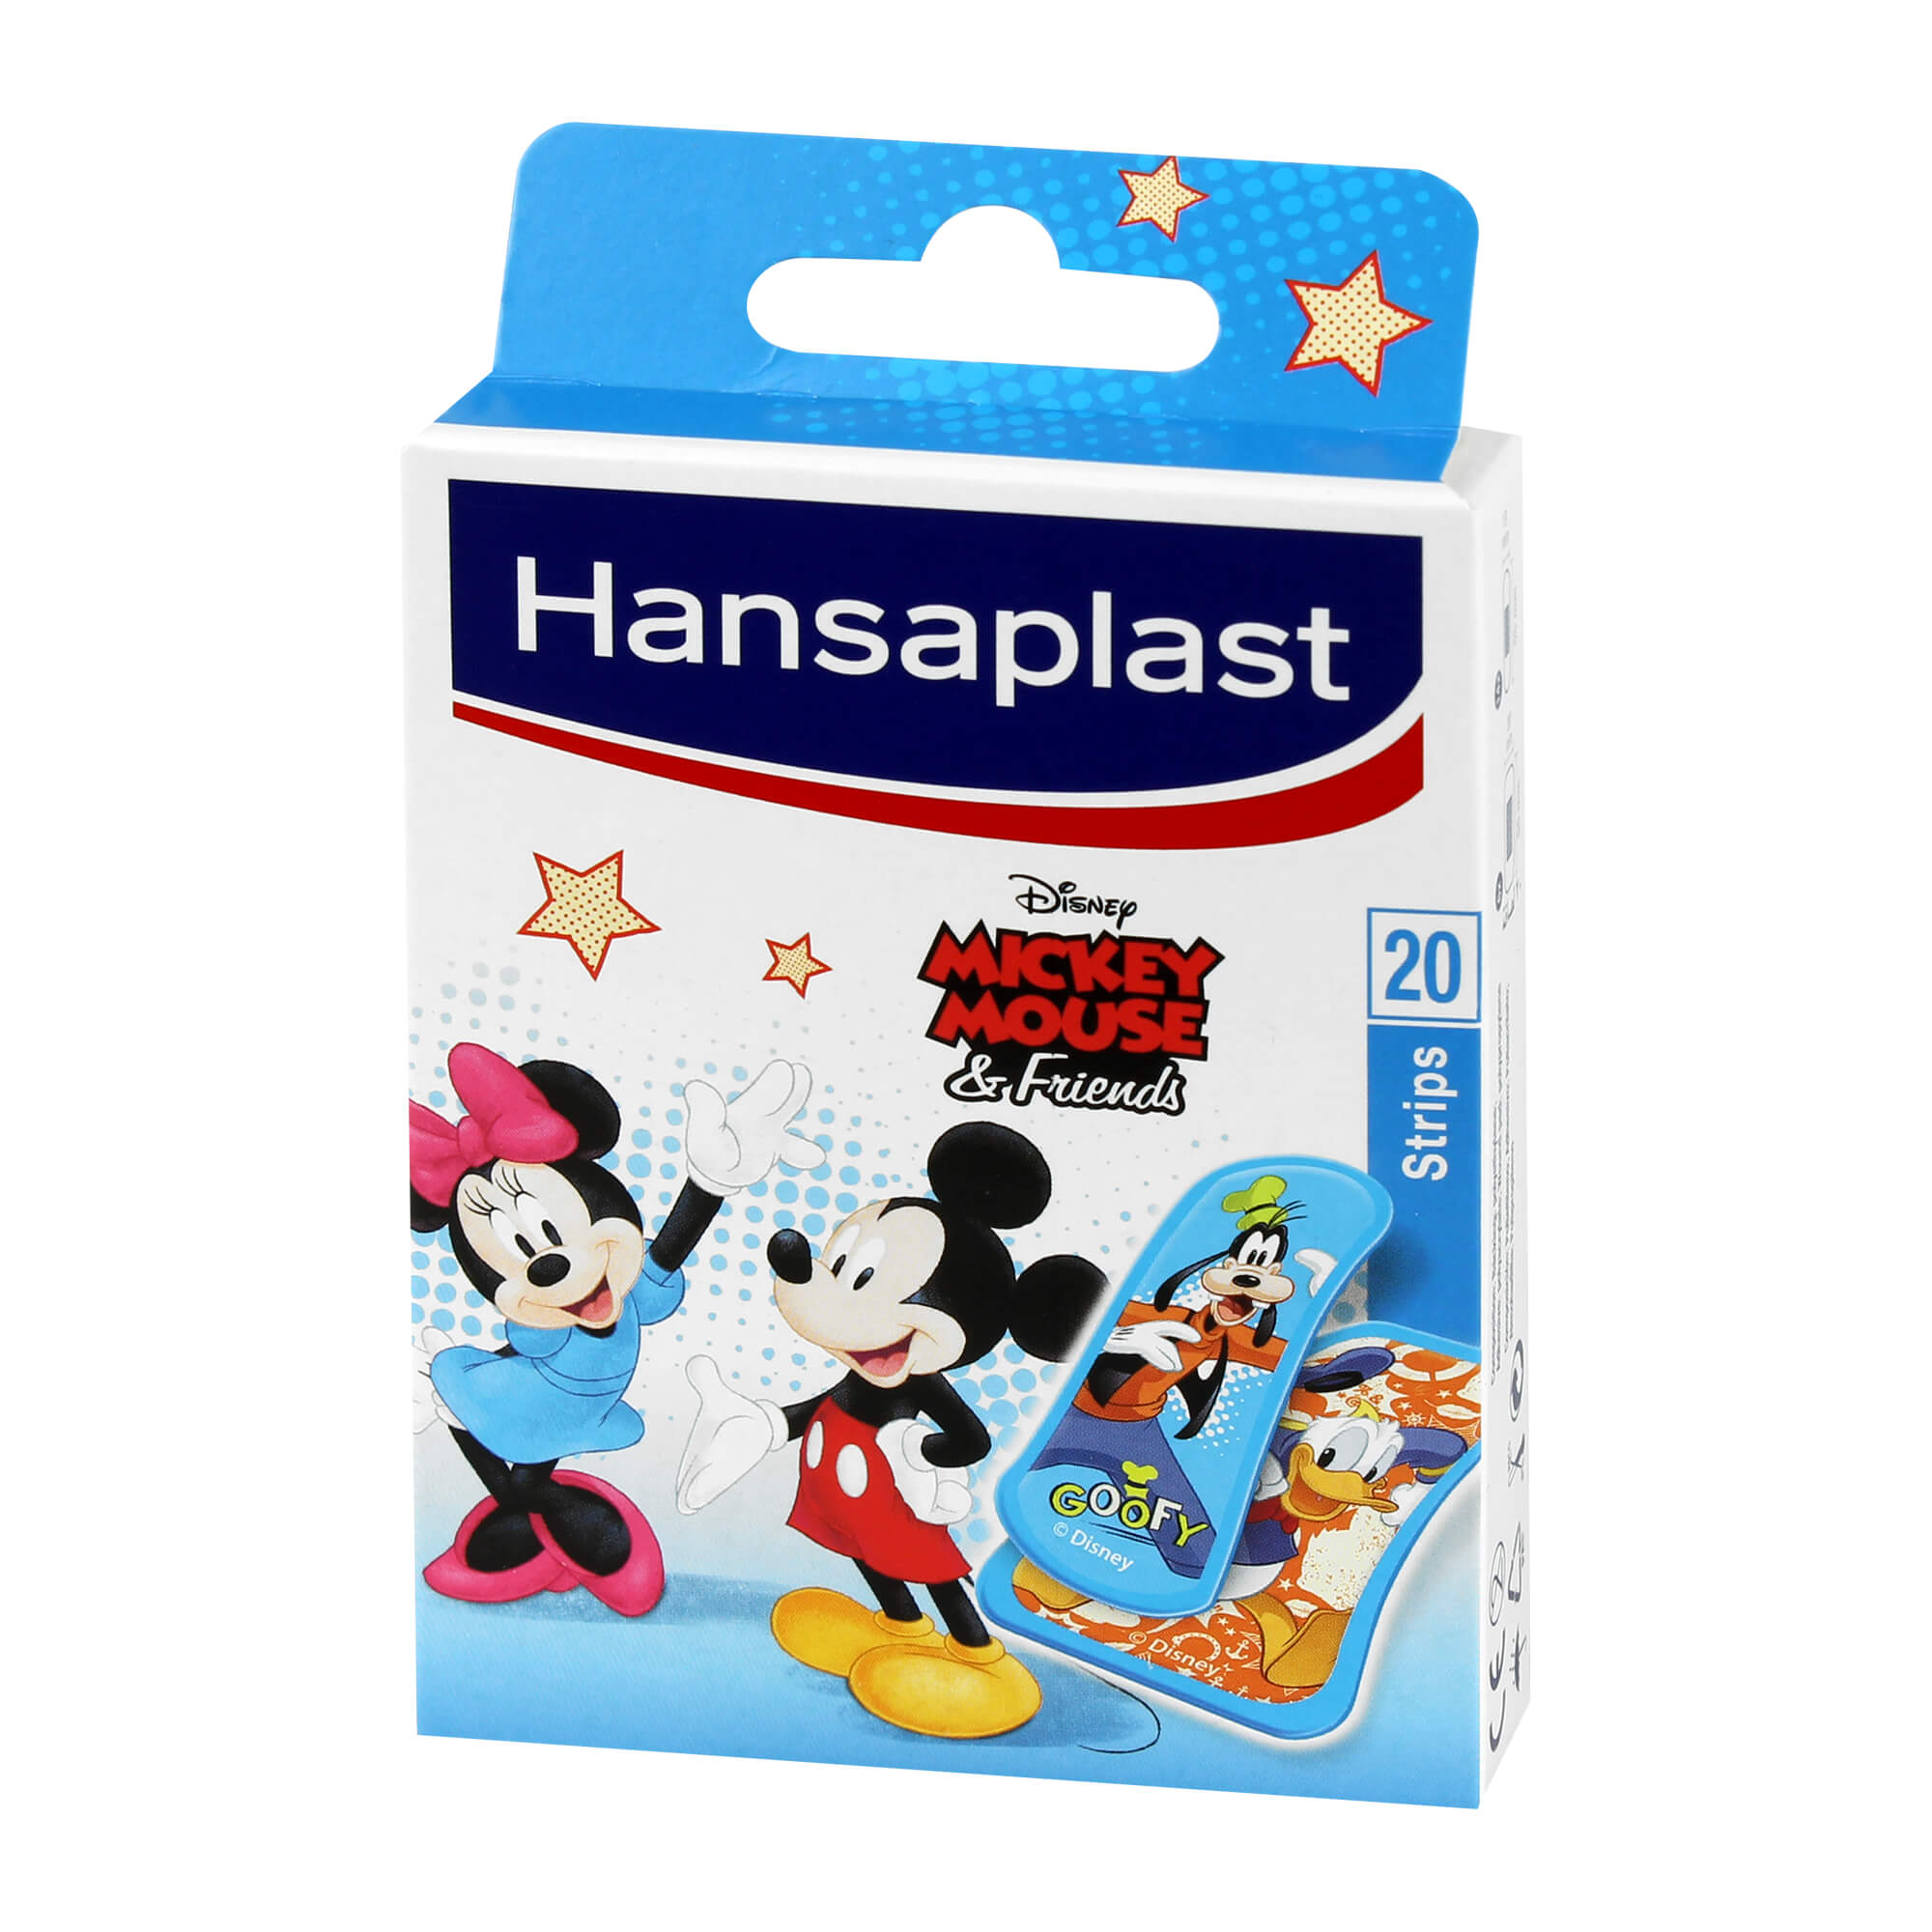 Mit den Hansaplast Kids-Pflastern sind kleine Kratzer, Schnitt- und Schürfwunden schnell wieder vergessen.